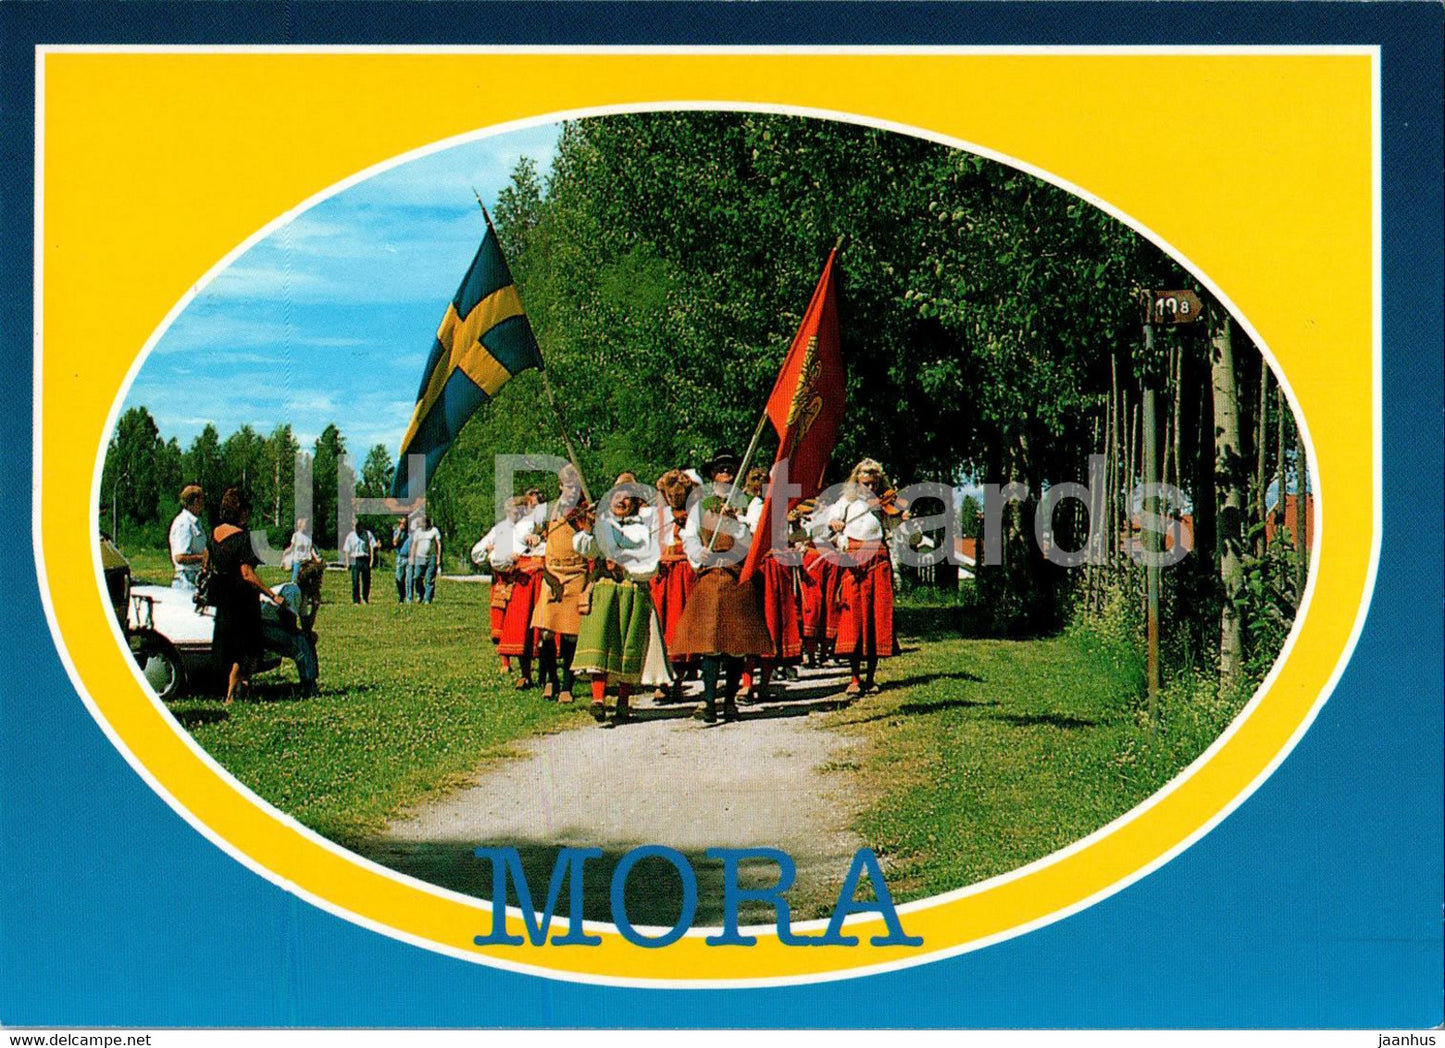 Mora - folk costumes - 111 - Sweden - unused - JH Postcards